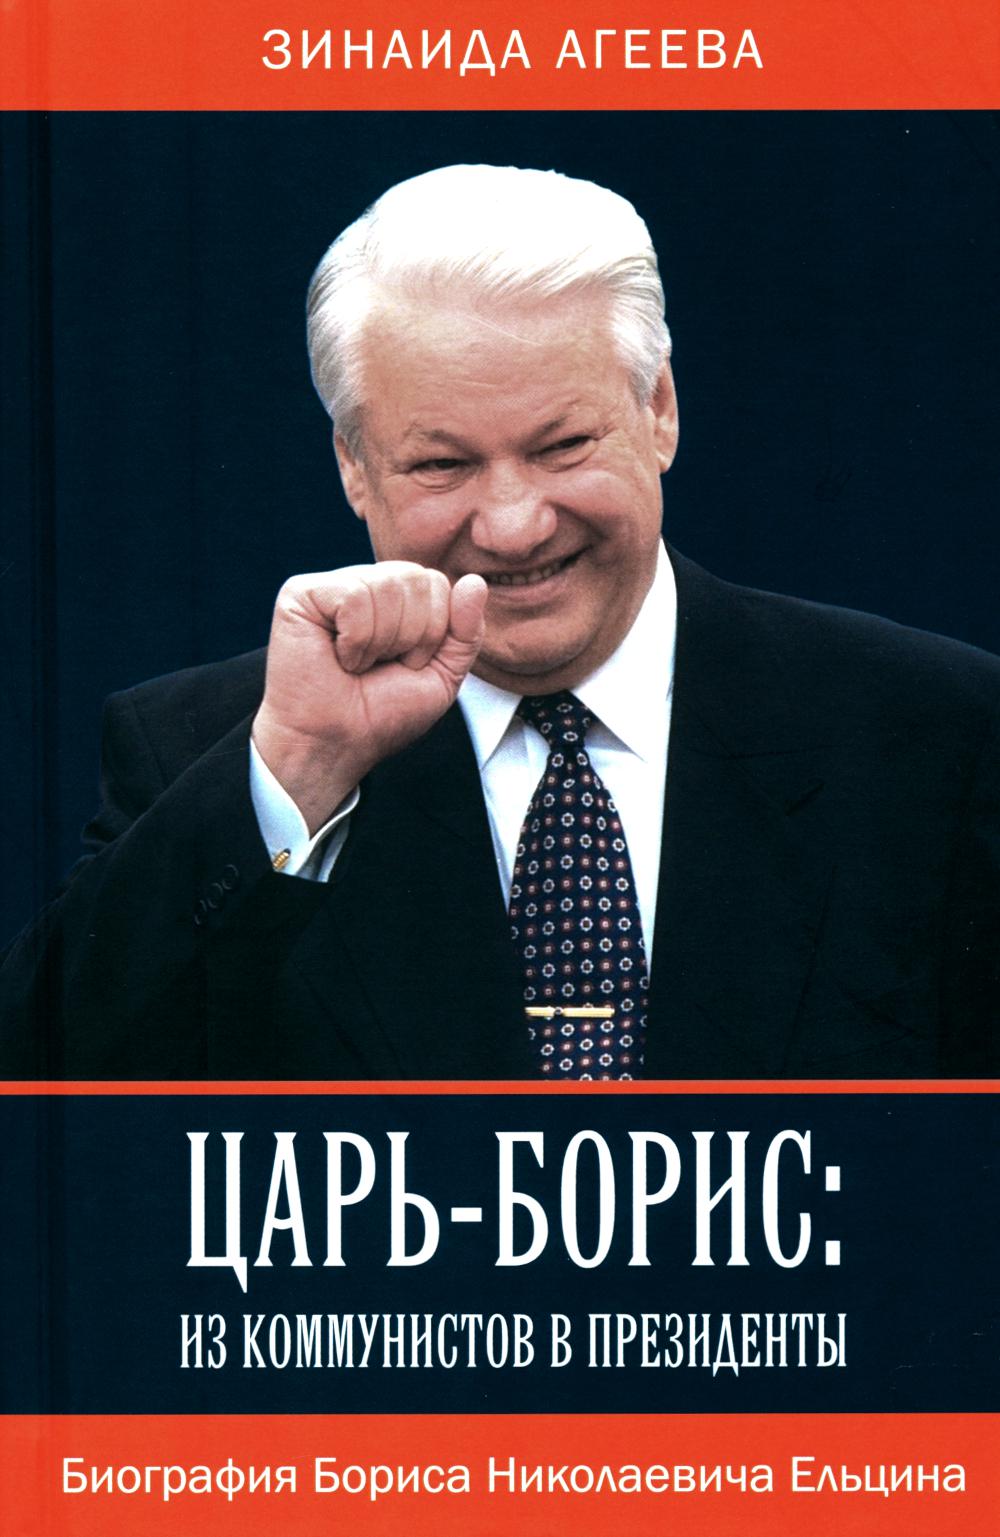 Царь-Борис: из коммунистов в президенты